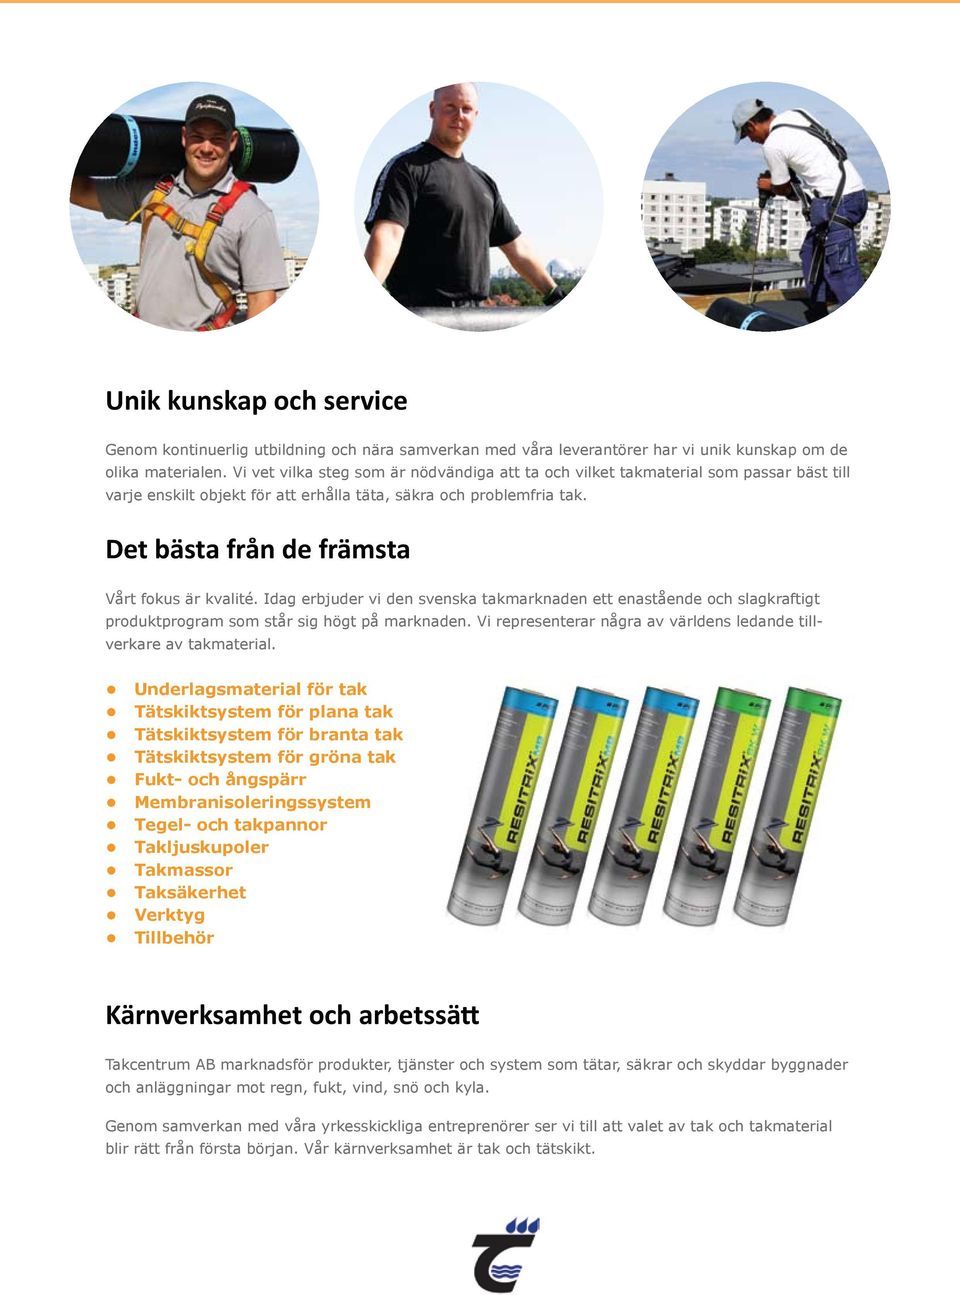 Det bästa från de främsta Vårt fokus är kvalité. Idag erbjuder vi den svenska takmarknaden ett enastående och slagkraftigt produktprogram som står sig högt på marknaden.